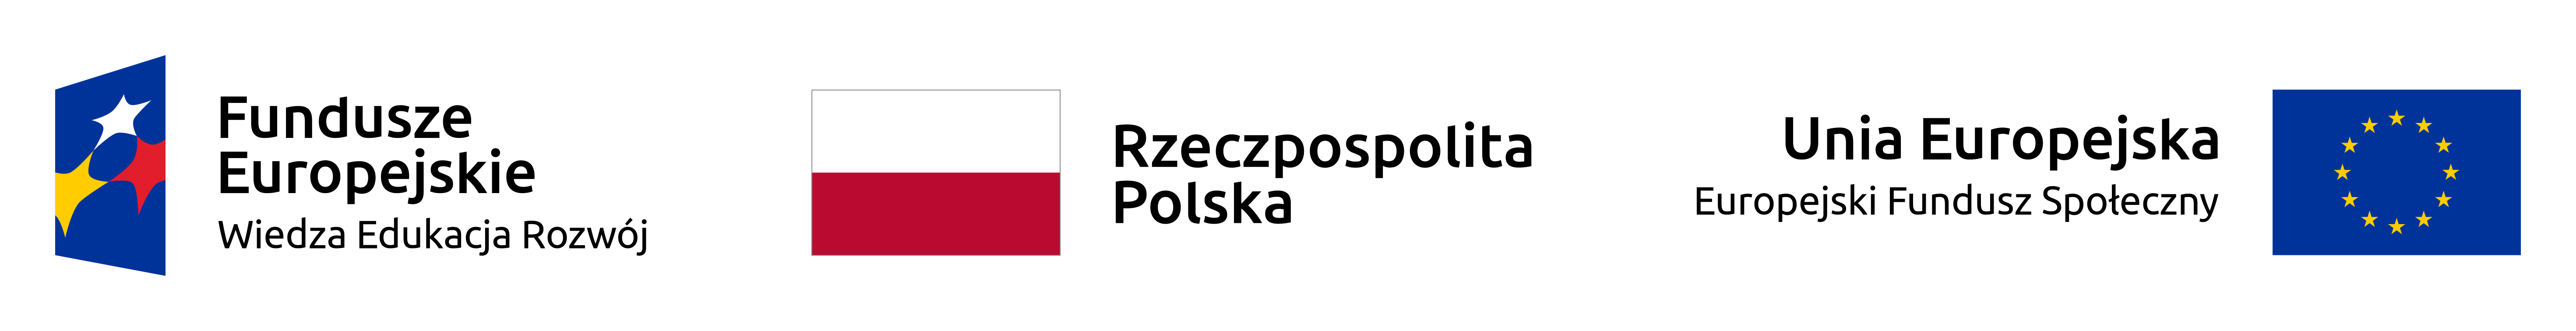 Logotyp Fundusze Europejskie Wiedza Edukacja Rozwój - trzy gwiazdy na niebieskim tle, flaga Polski i napis Rzeczpospolita Polska, flaga UE i napis Unia Europejska Europejski Fundusz Społeczny